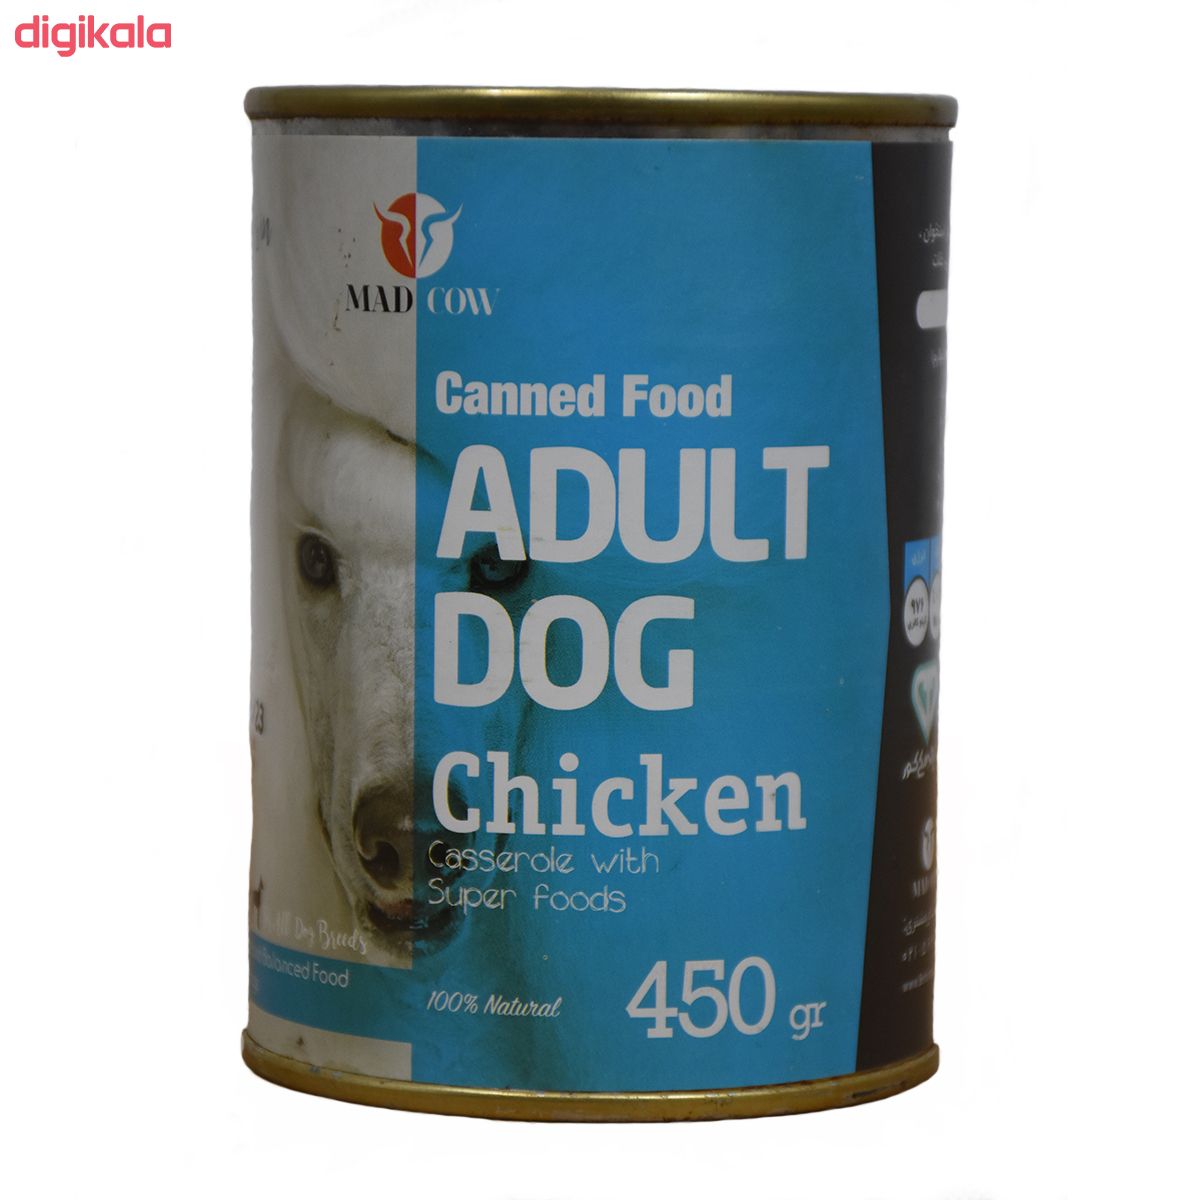 کنسرو غذای سگ مدکاو مدل Adult Dog Beef وزن 450 گرم